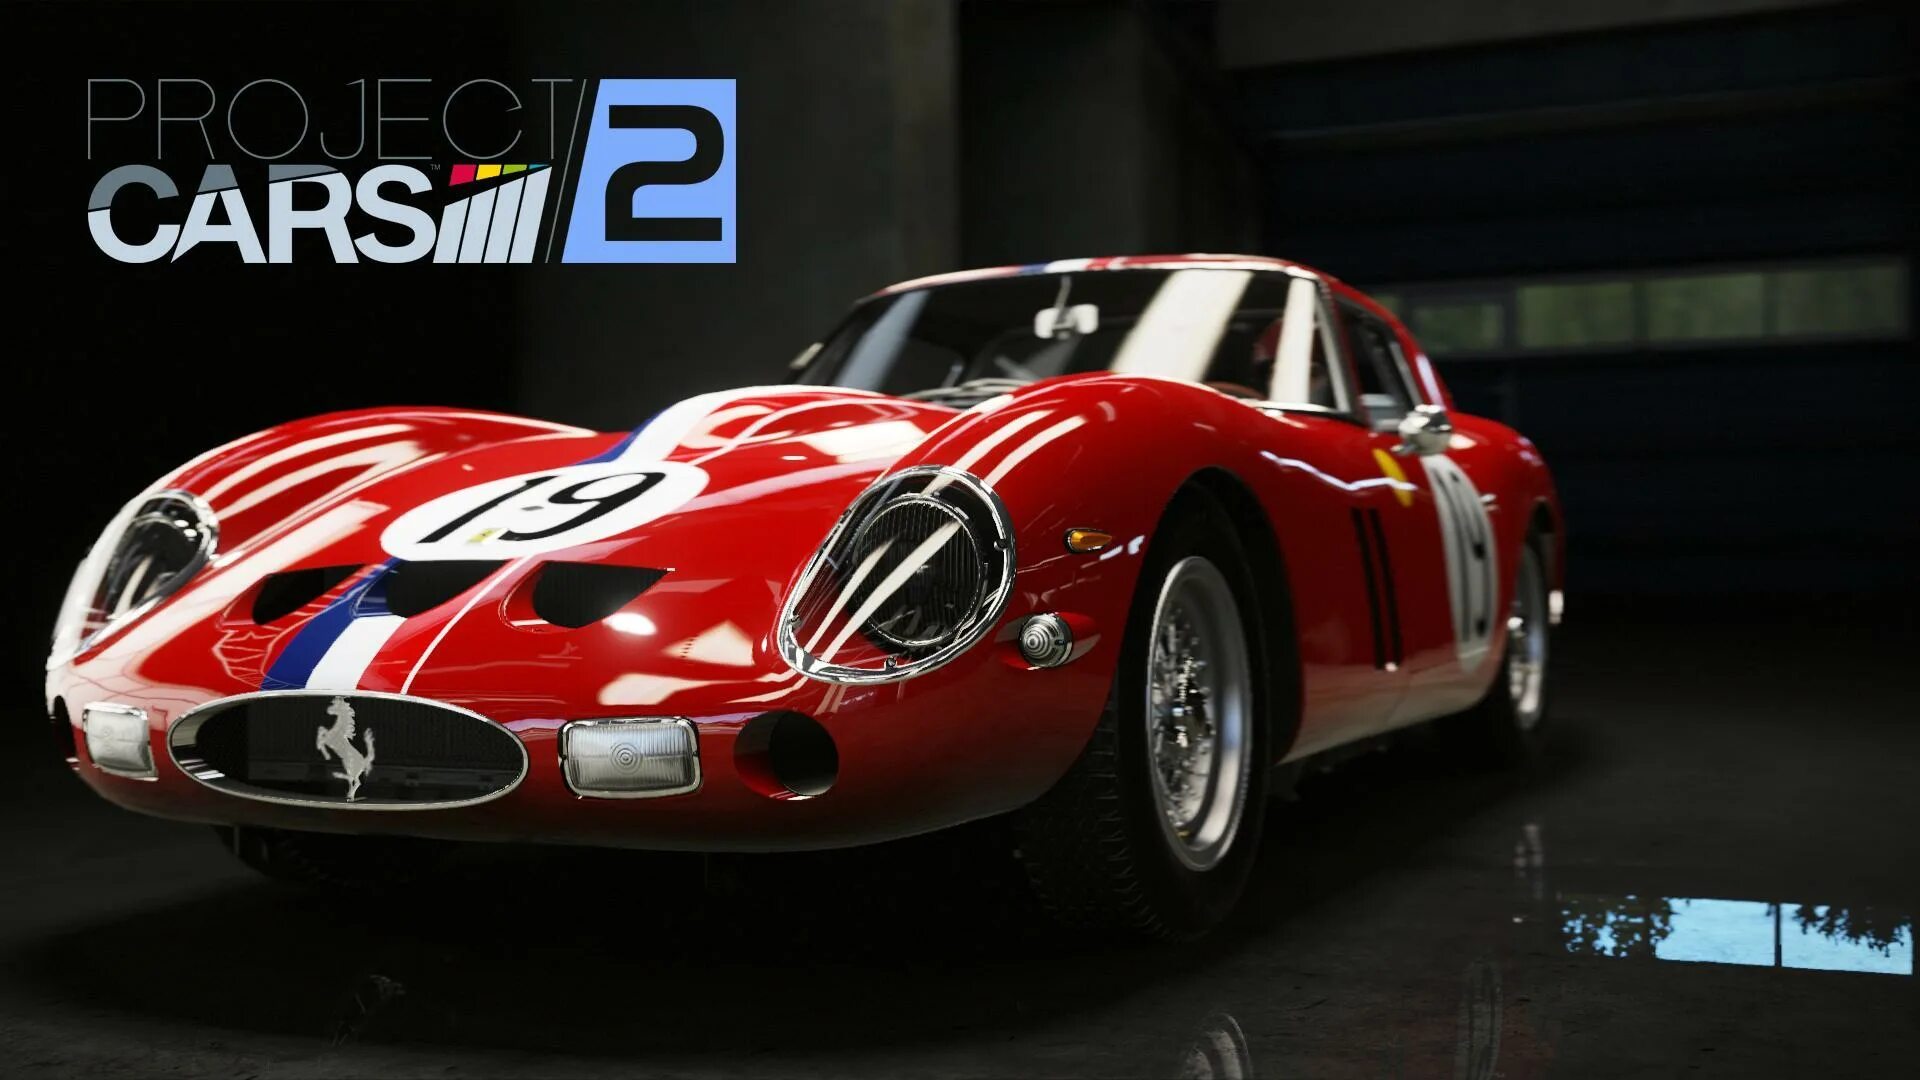 Кар x 2. Ferrari 250 GTO. Project cars 2. Феррари 250 ГТР. Project cars фон.